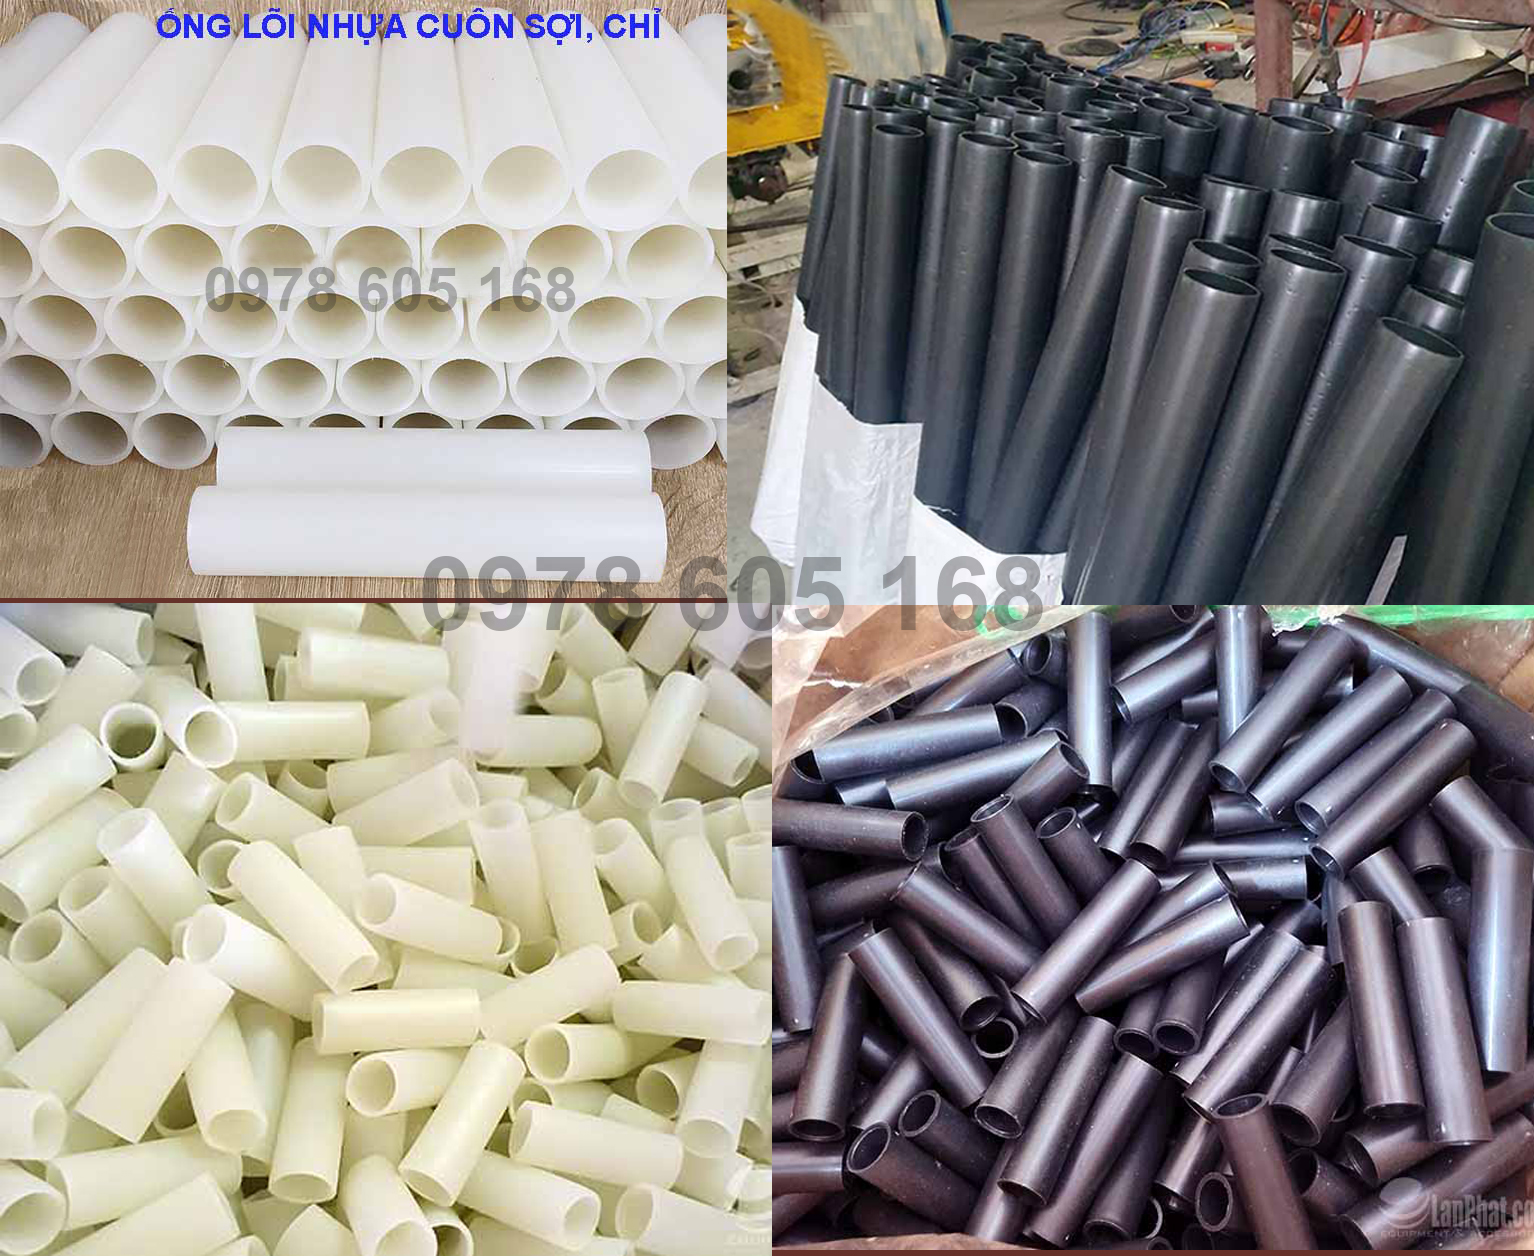 Địa chỉ cung cấp lõi nhựa cuộn chỉ tại Hà Nội - Xưởng sản xuất